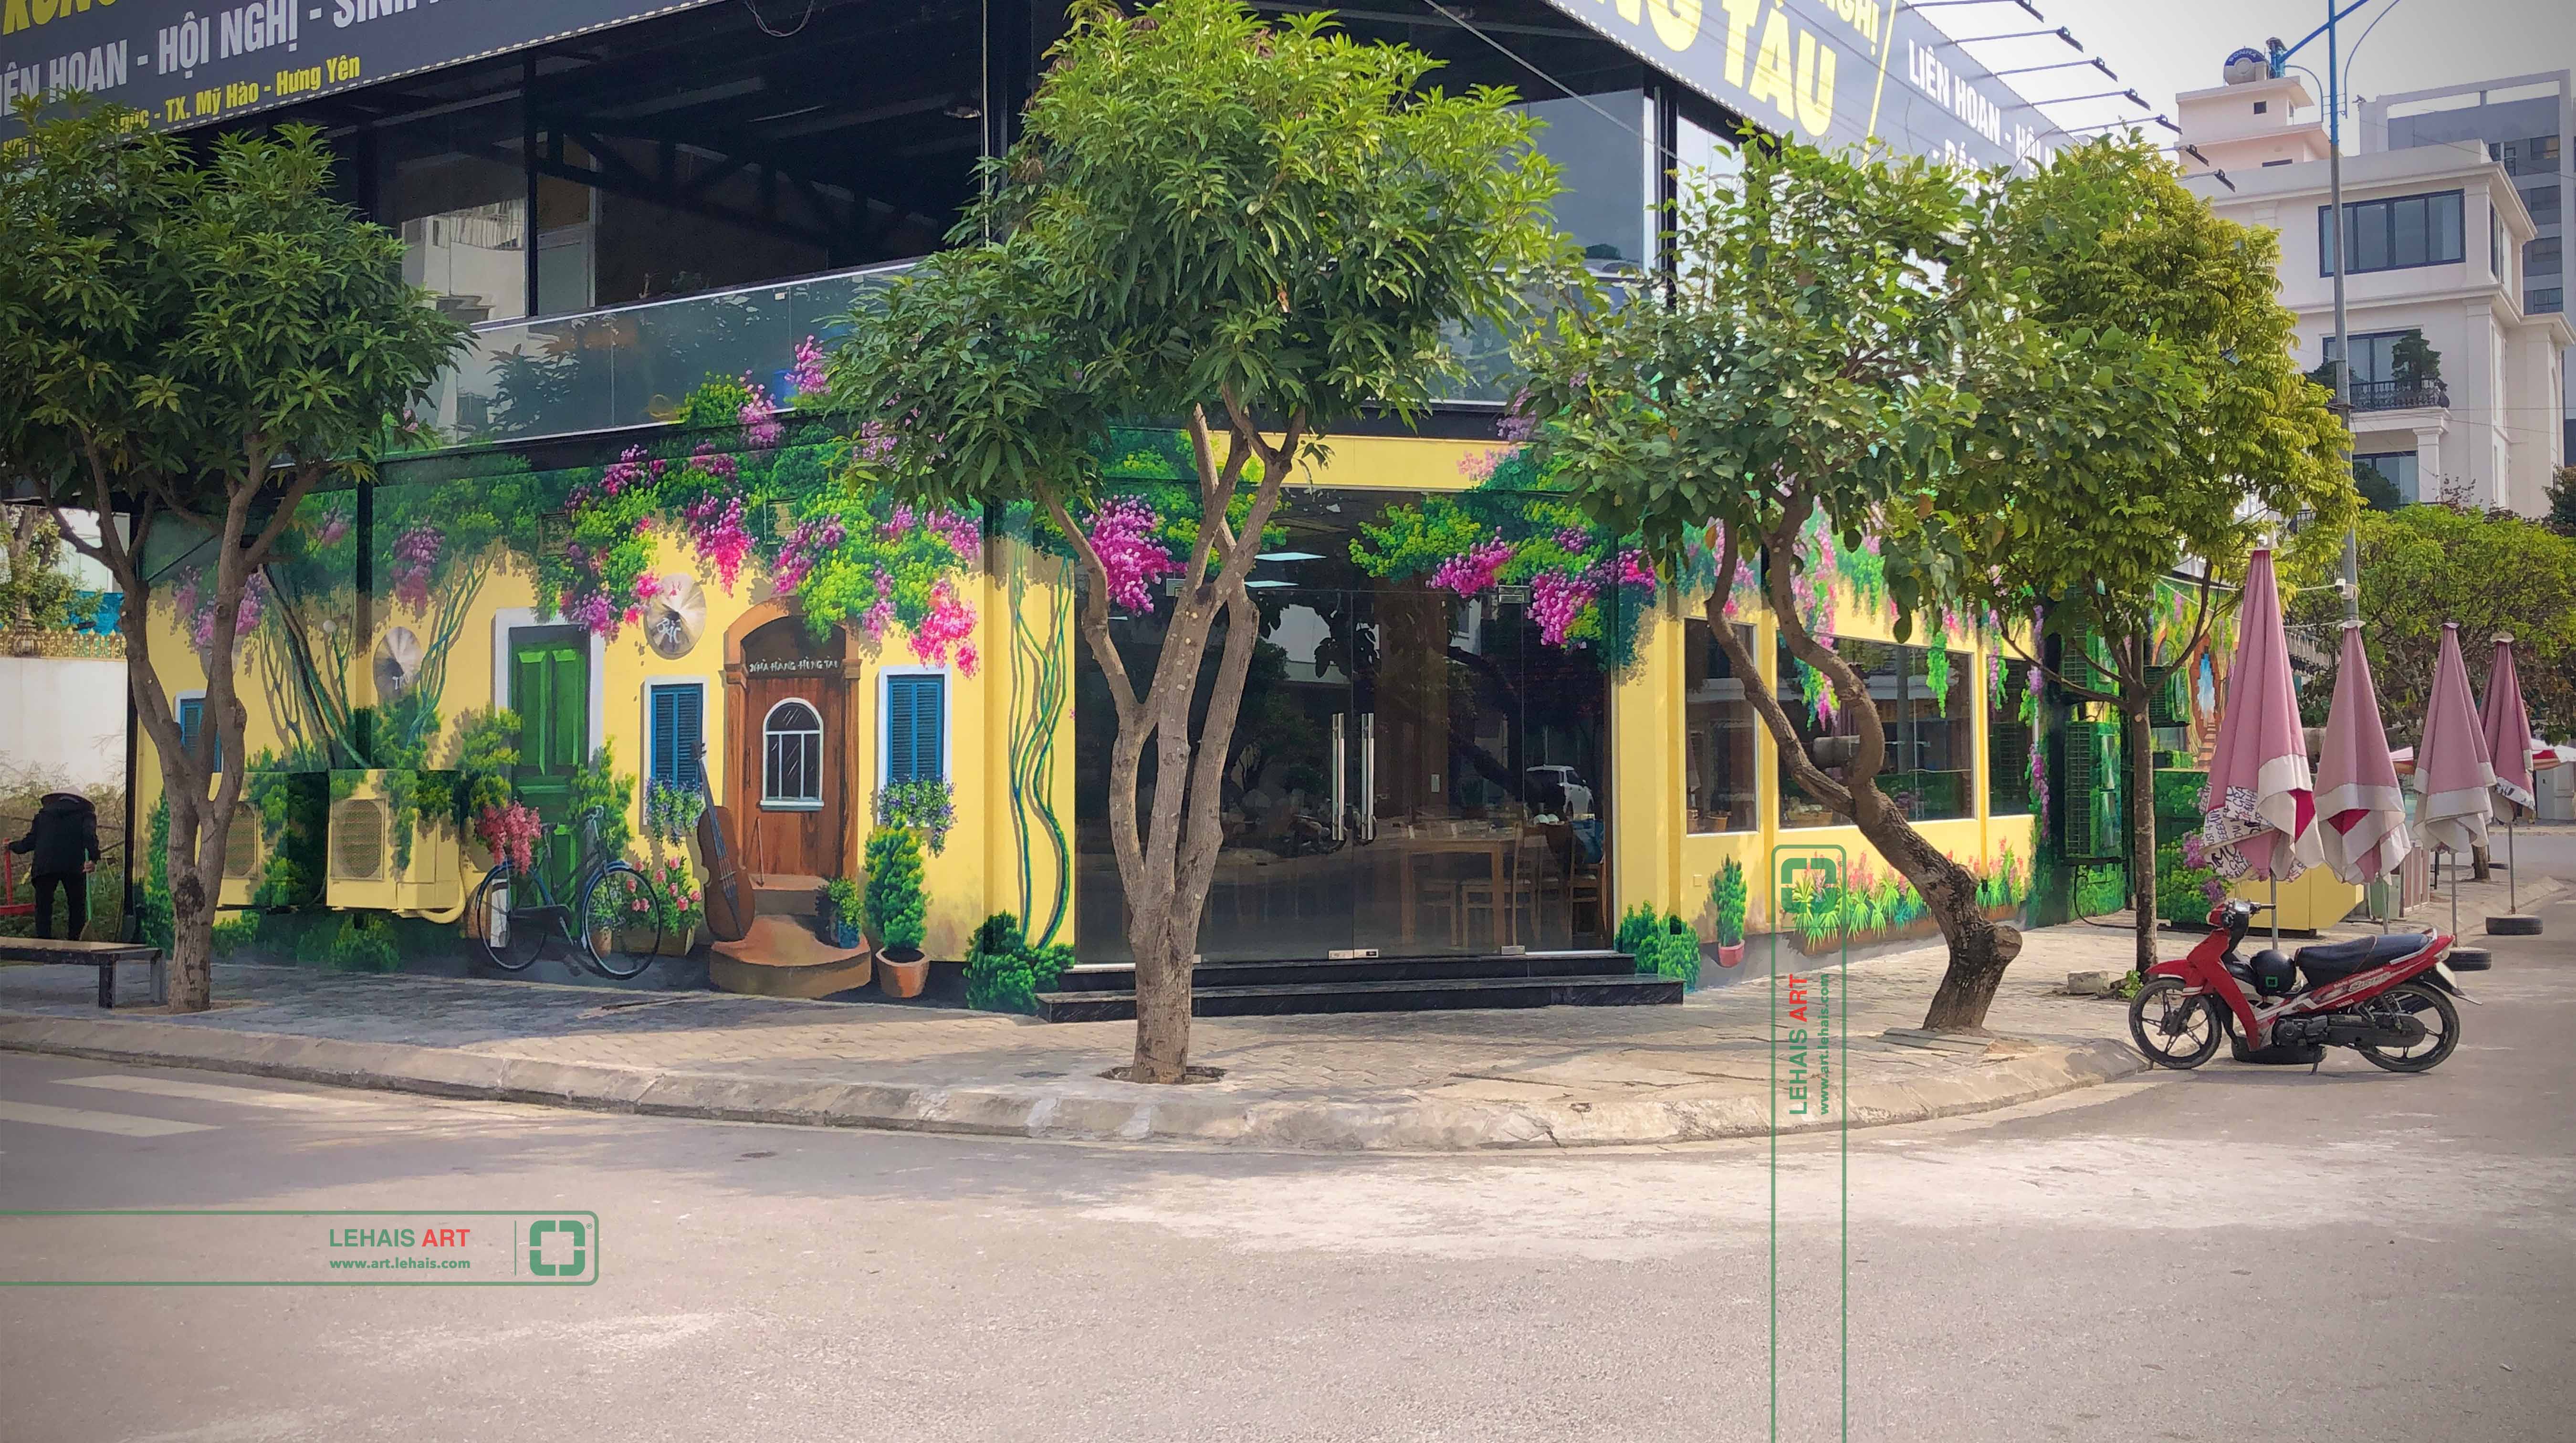 Vẽ tranh 3D trang trí tường tại nhà Hàng Hùng Tàu ở Phố Nối, Hưng Yên - TT198LHAR 2